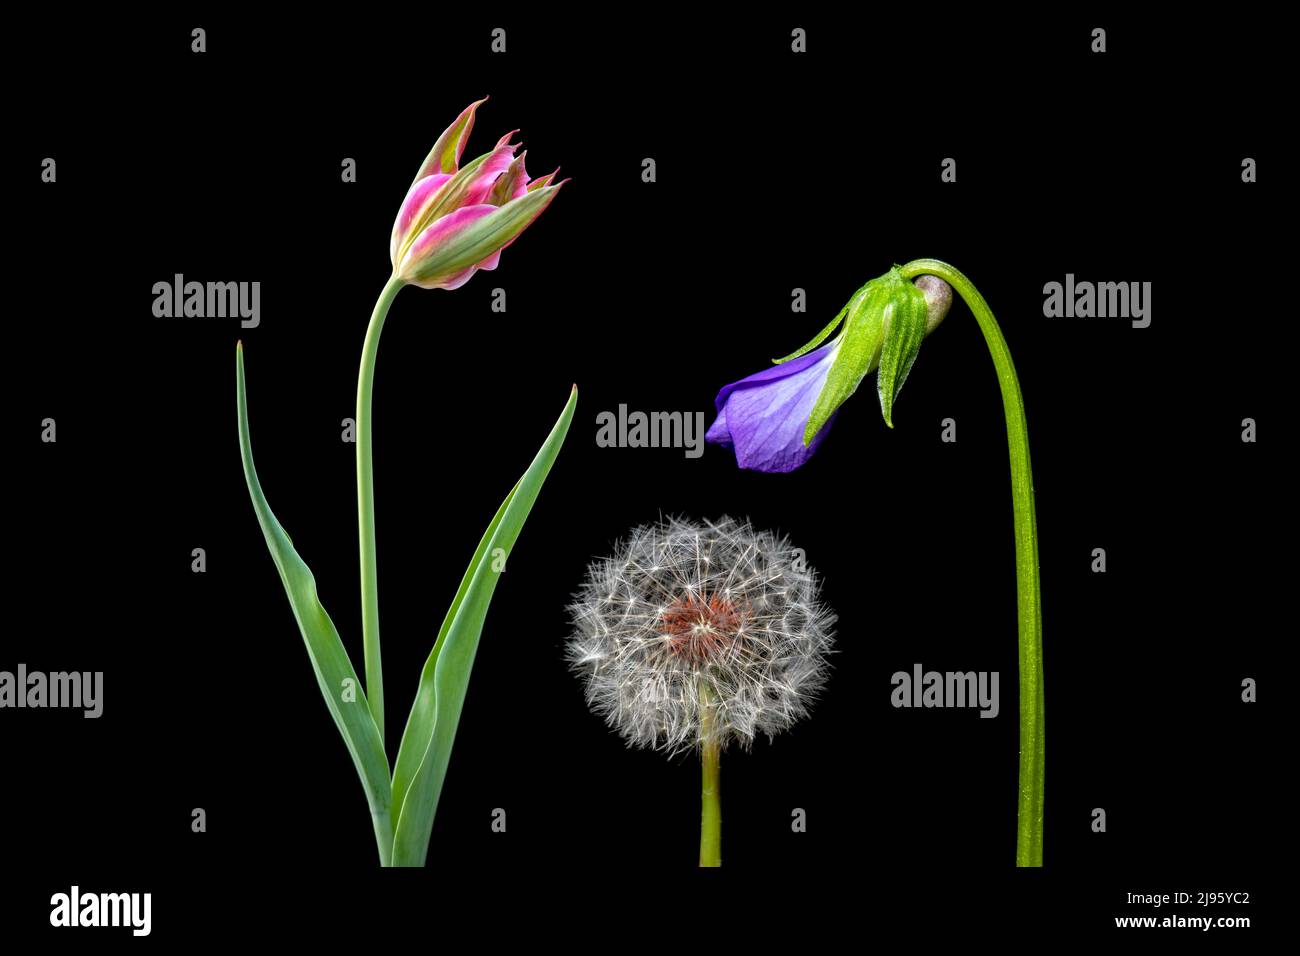 Compuestos florales coloridos (tulipanes, diente de león y violeta) aislados sobre fondo negro - Carolina del Norte, Estados Unidos Foto de stock